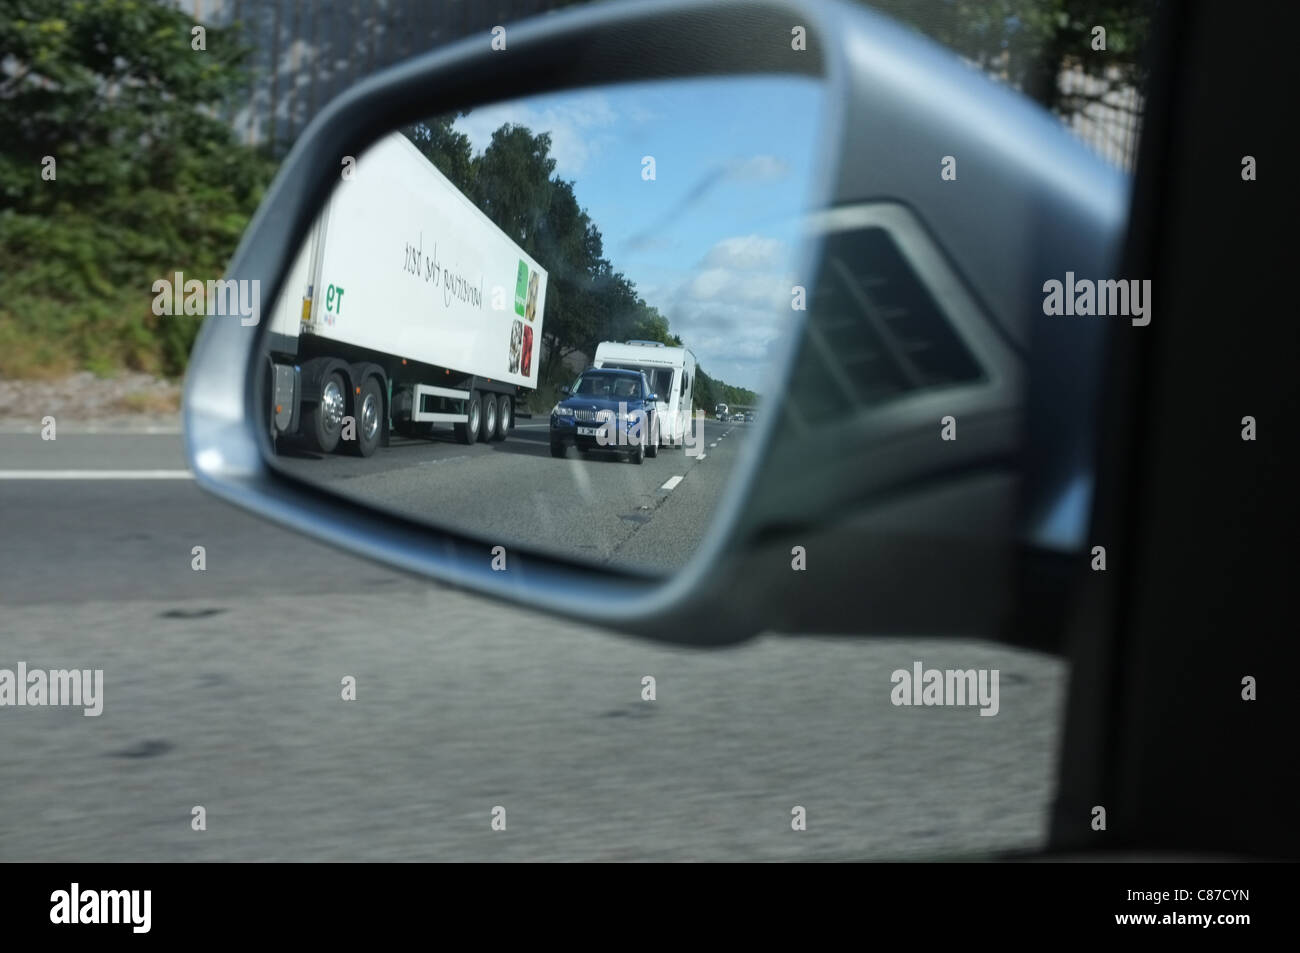 Ein Auto Anhänger auf der Autobahn im Auto Kotflügel Spiegel reflektiert  Stockfotografie - Alamy